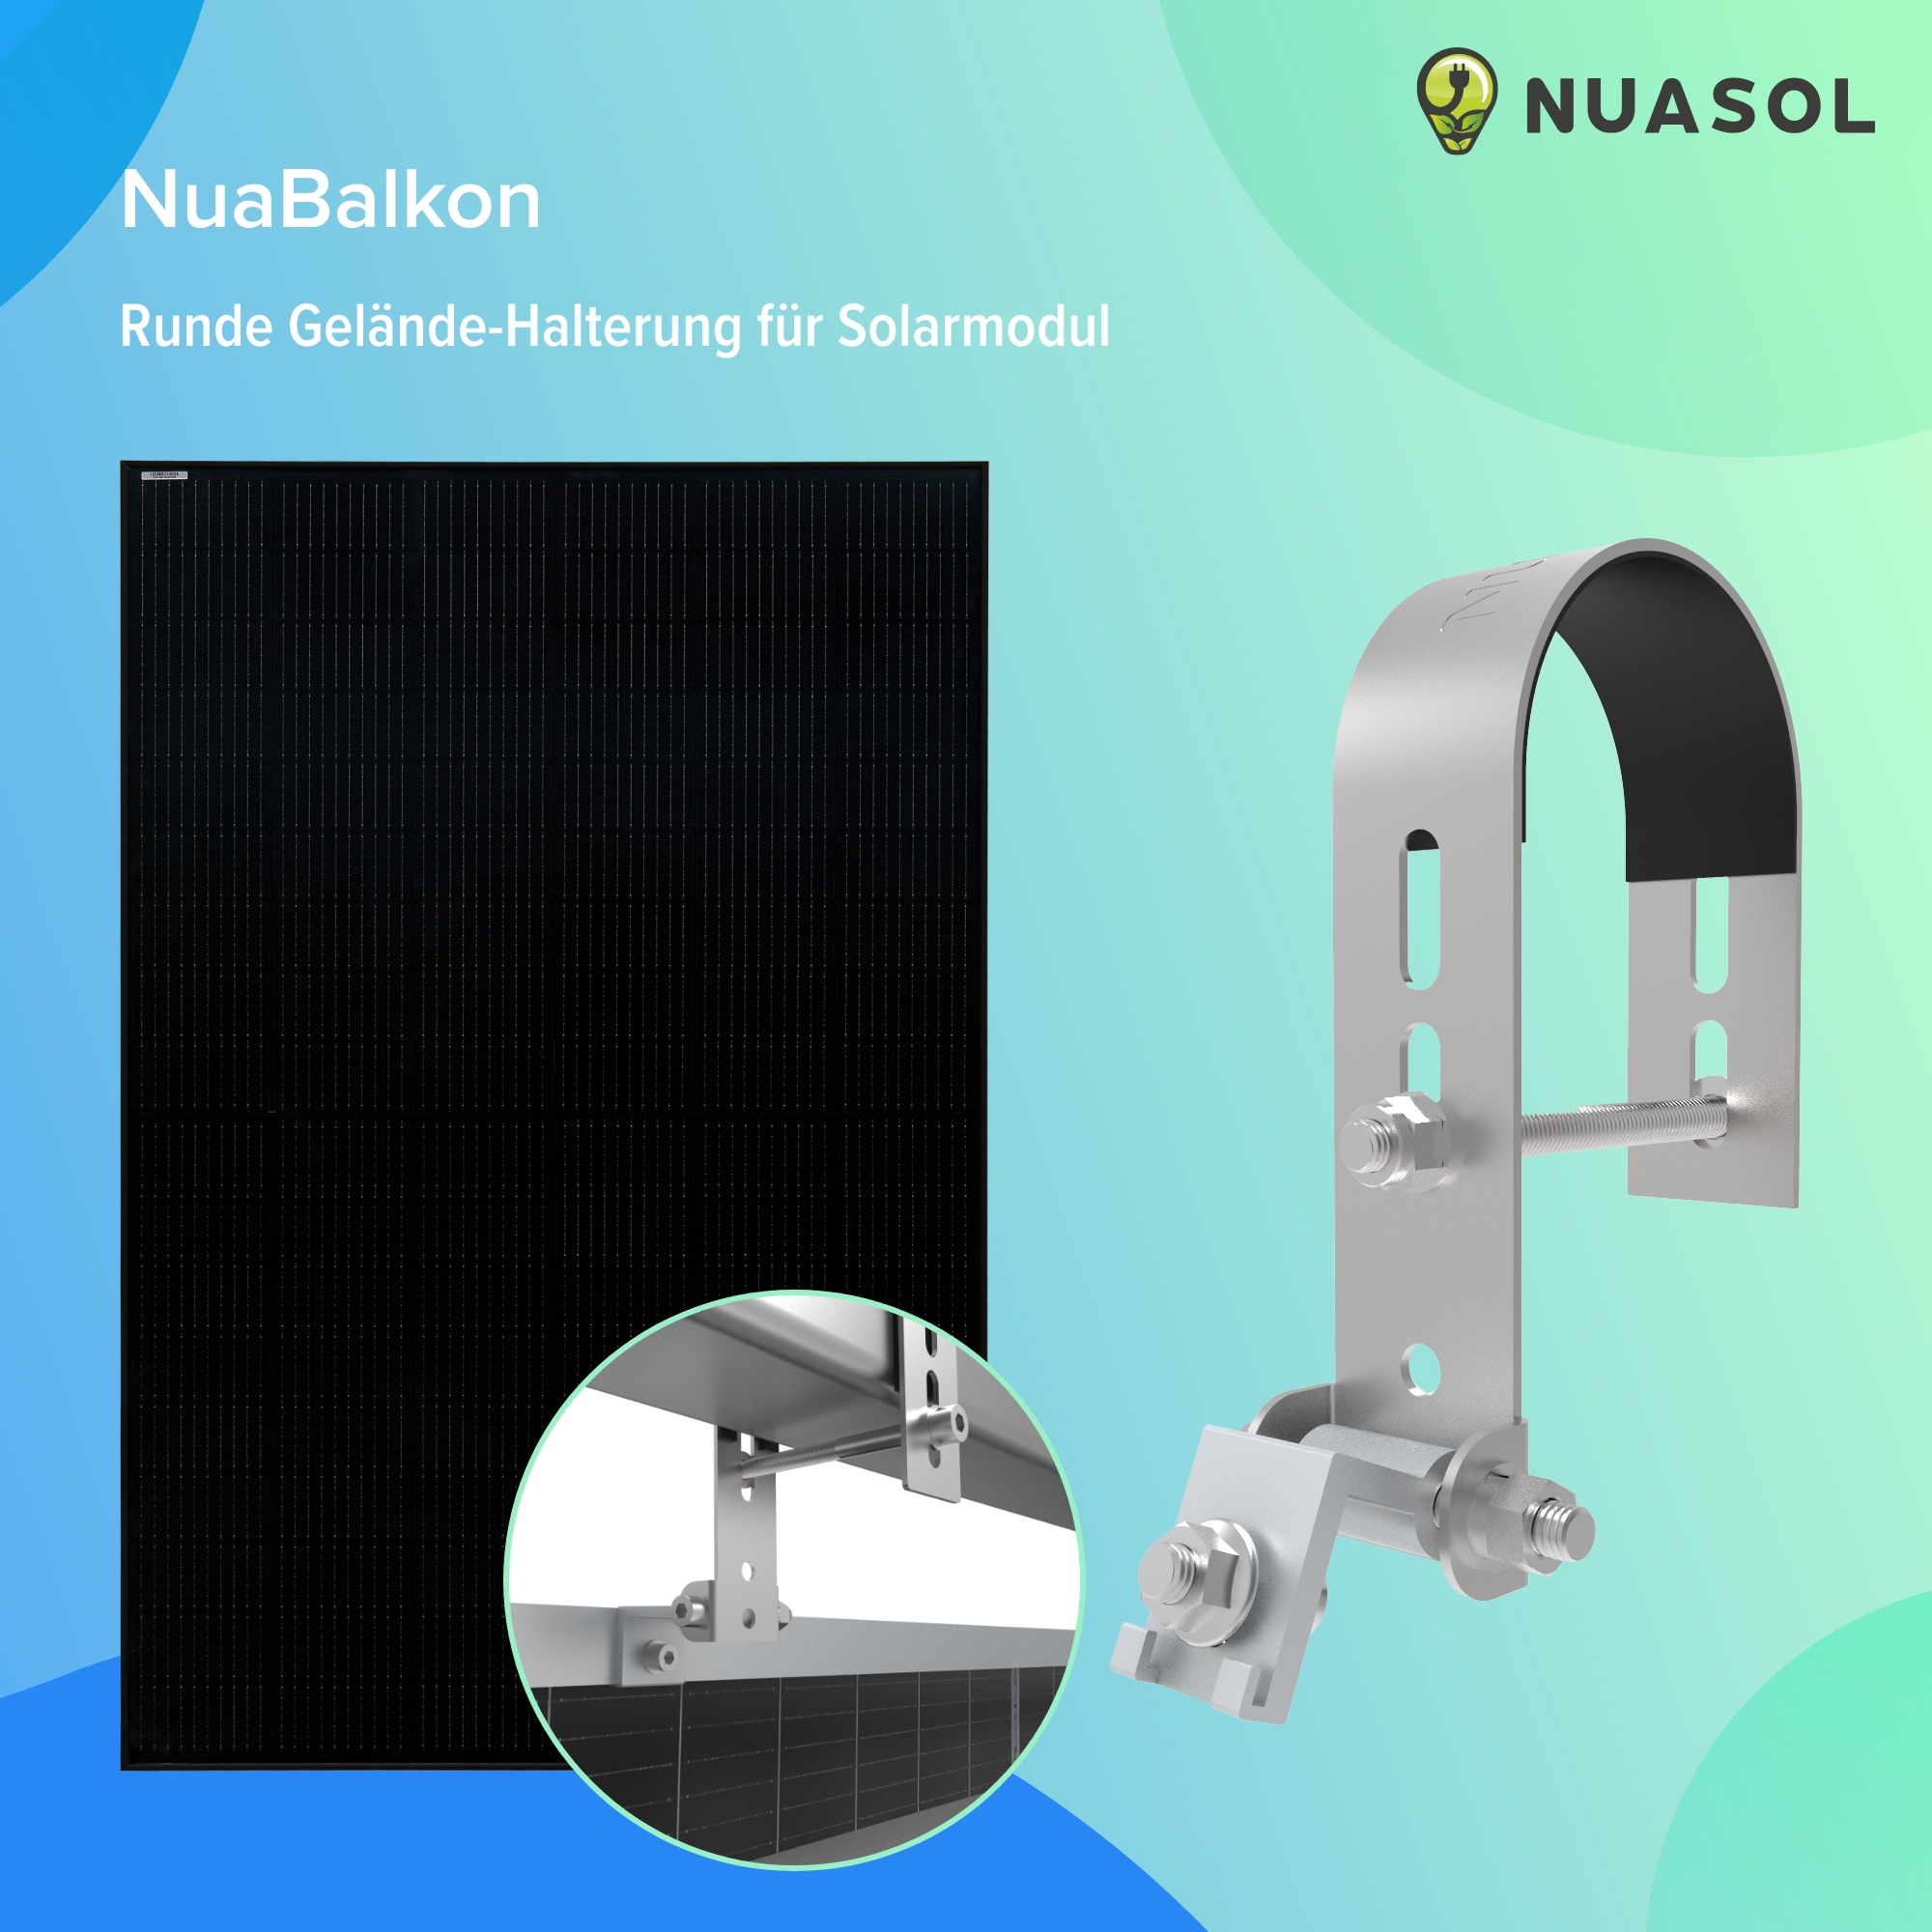 NUASOL Balkonkraftwerkhalterung Geländer Befestigung 1 Solarmodul Silber Photovoltaik